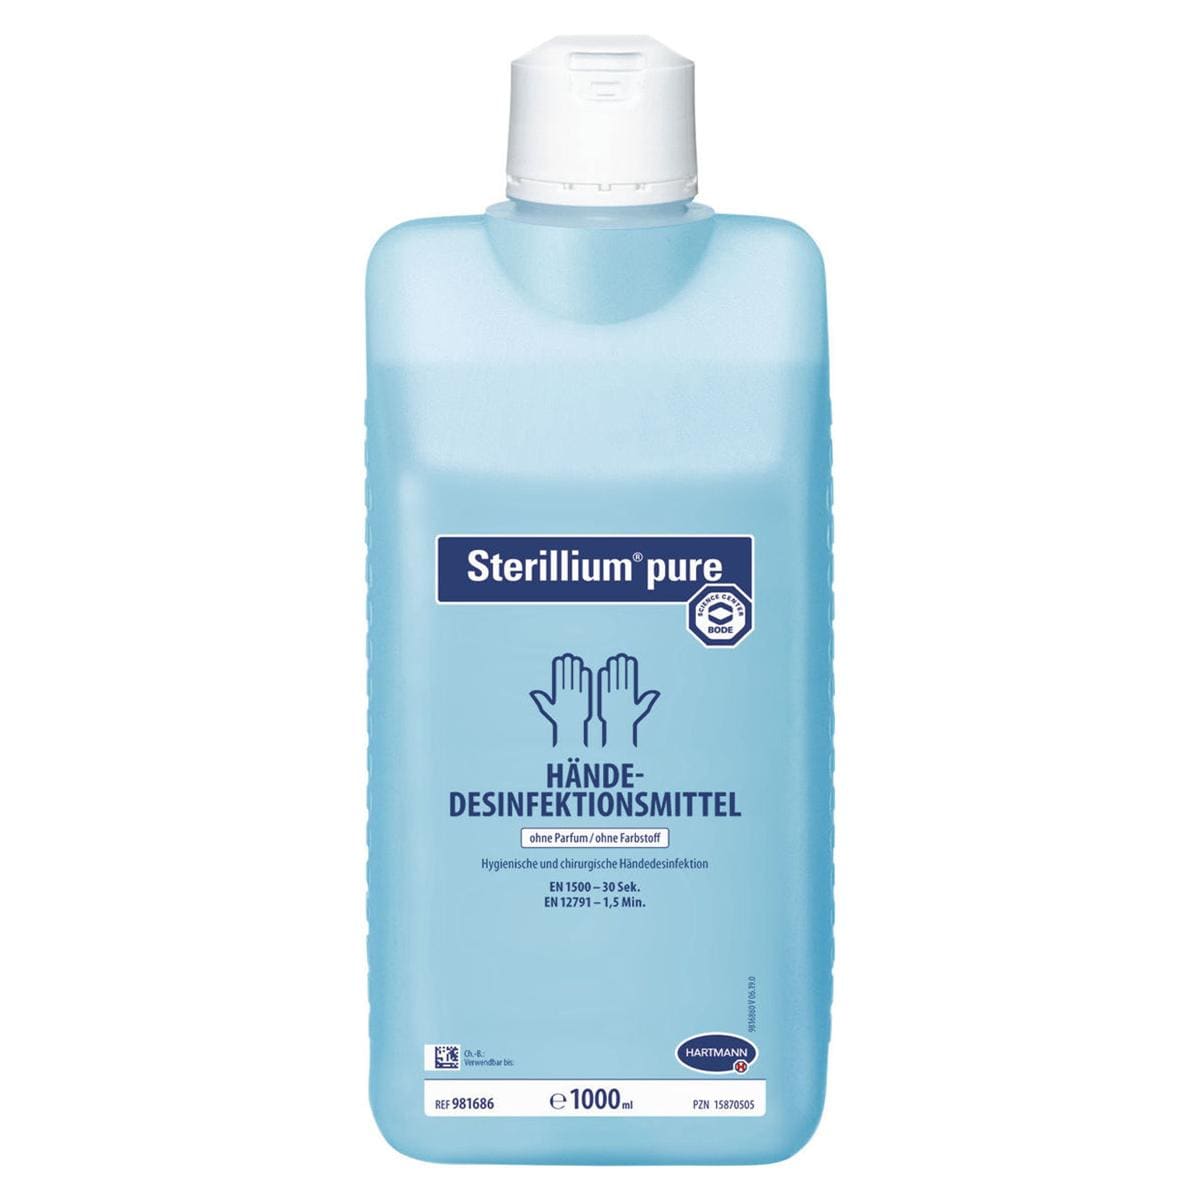 Sterillium® pure - Flasche 1 Liter